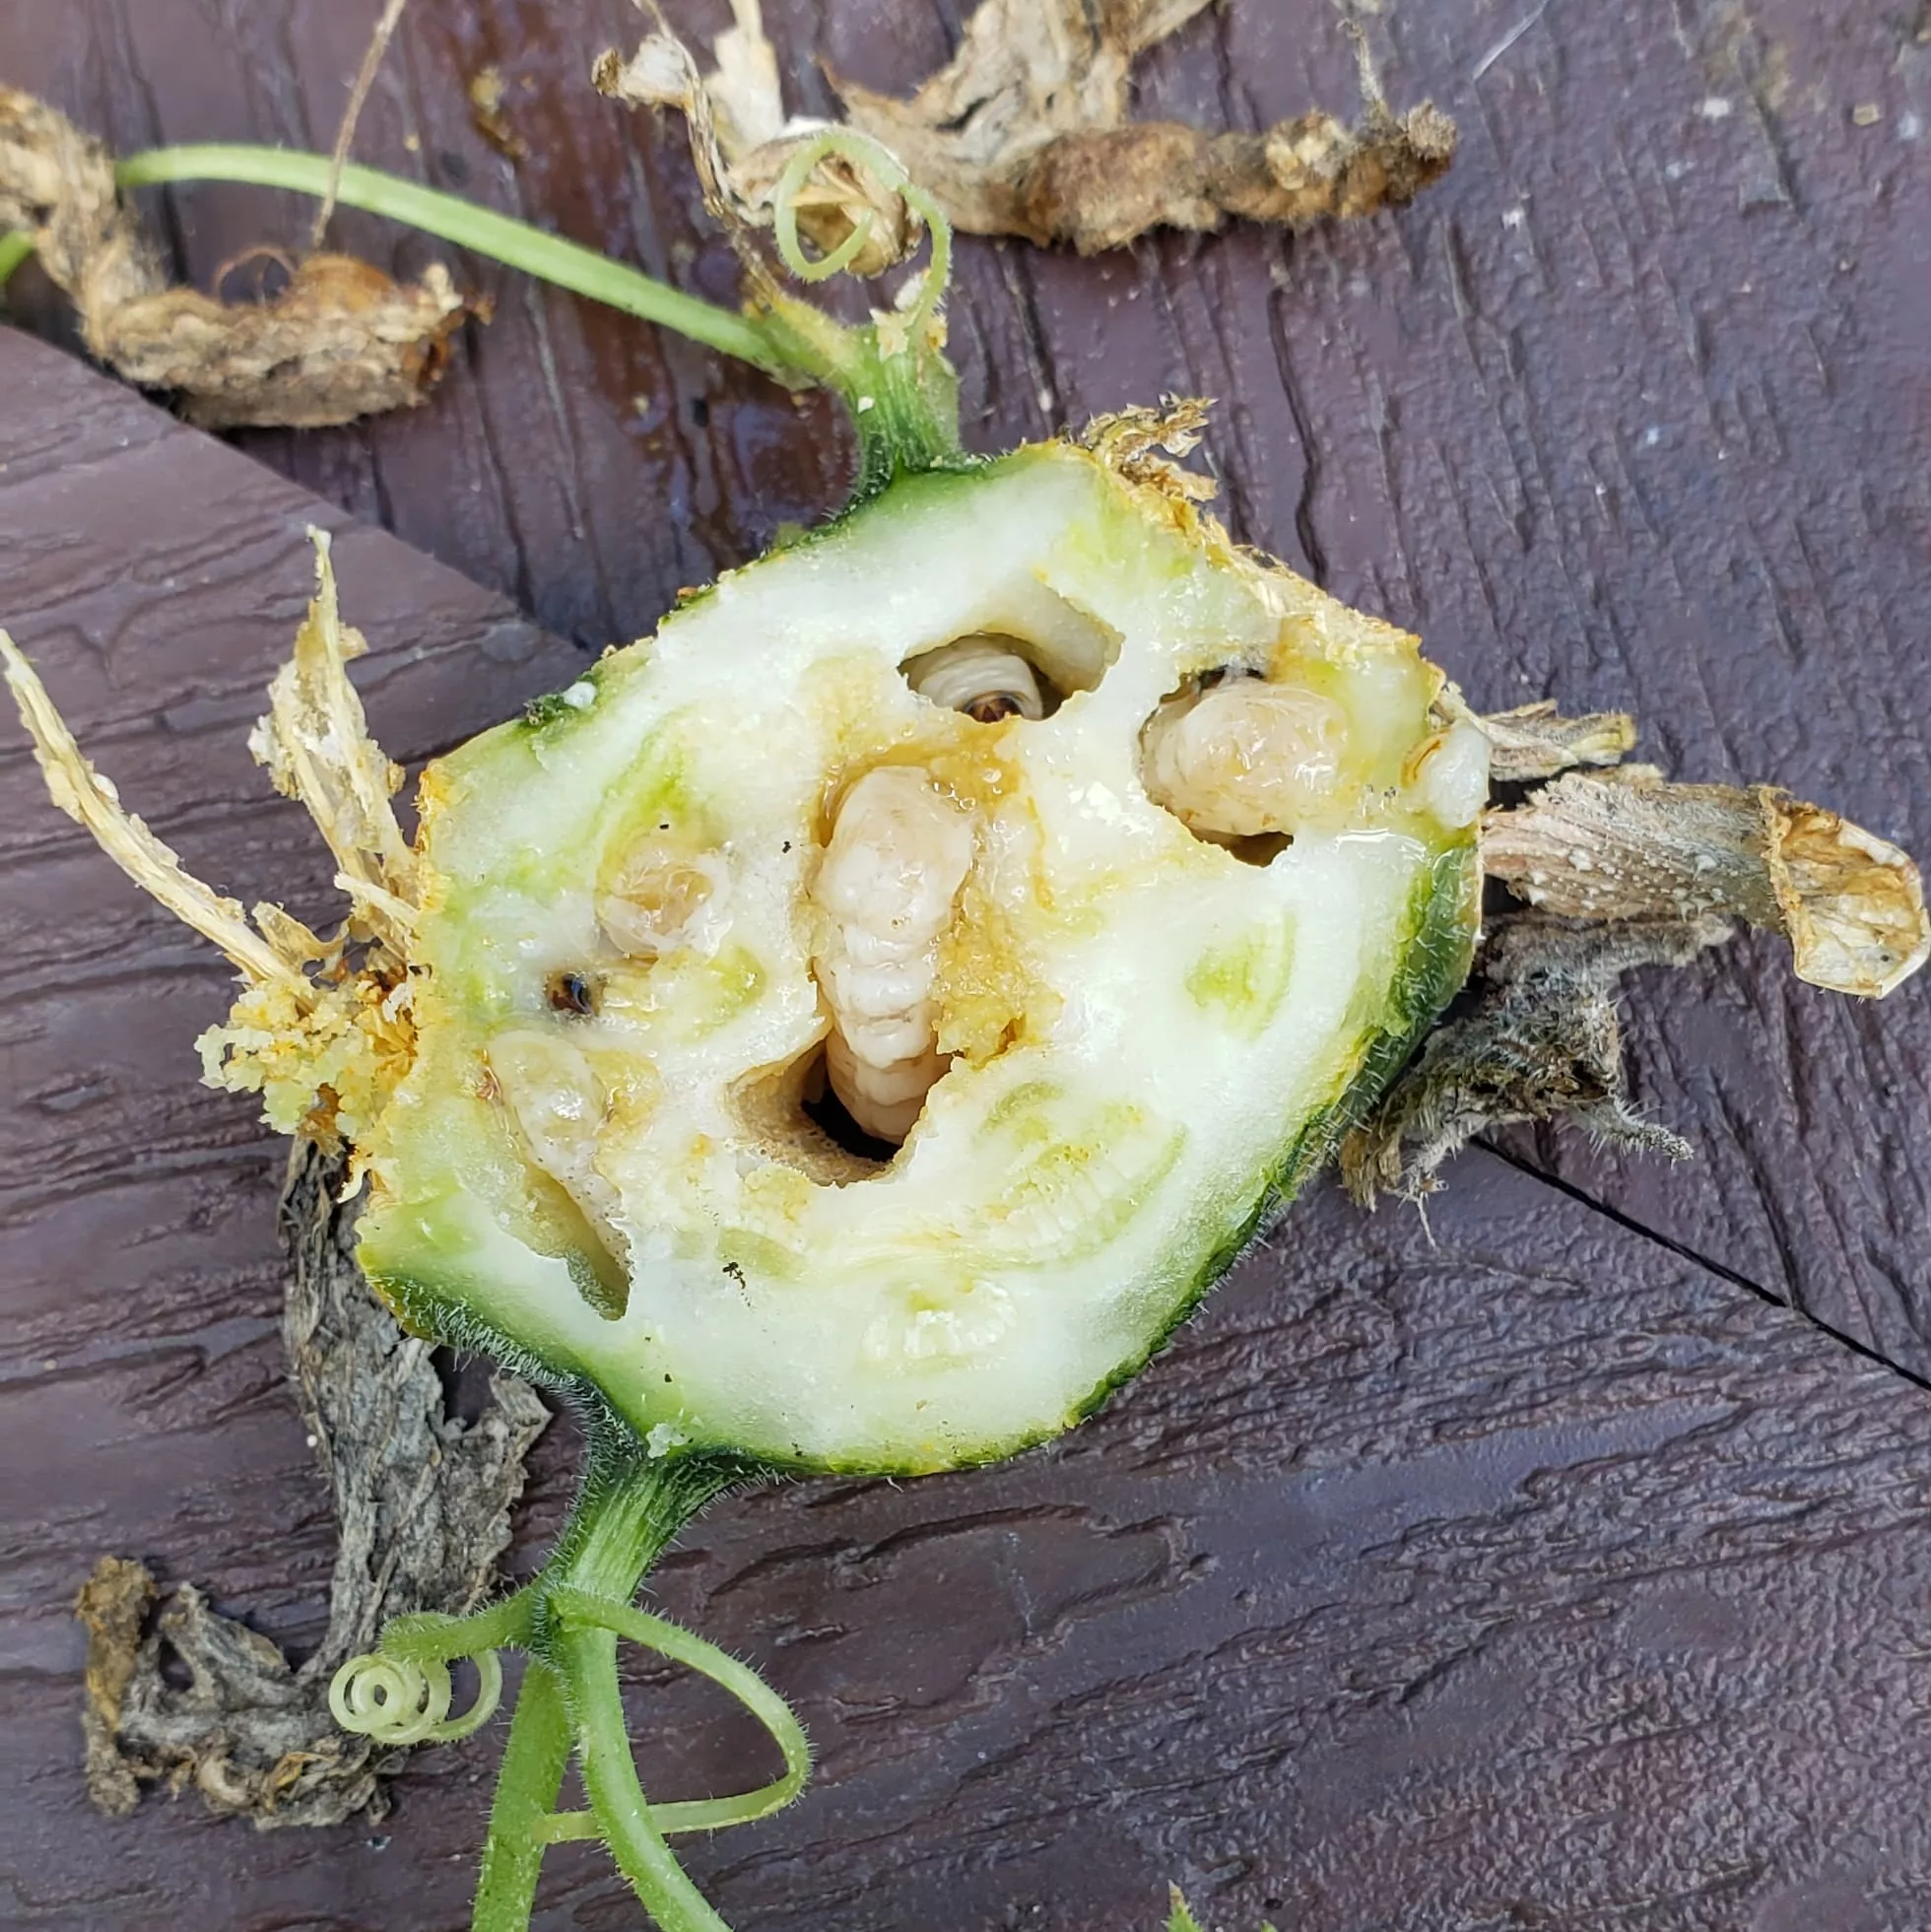 Squash vine borer larvae in the middle of a cut up zucchini stem